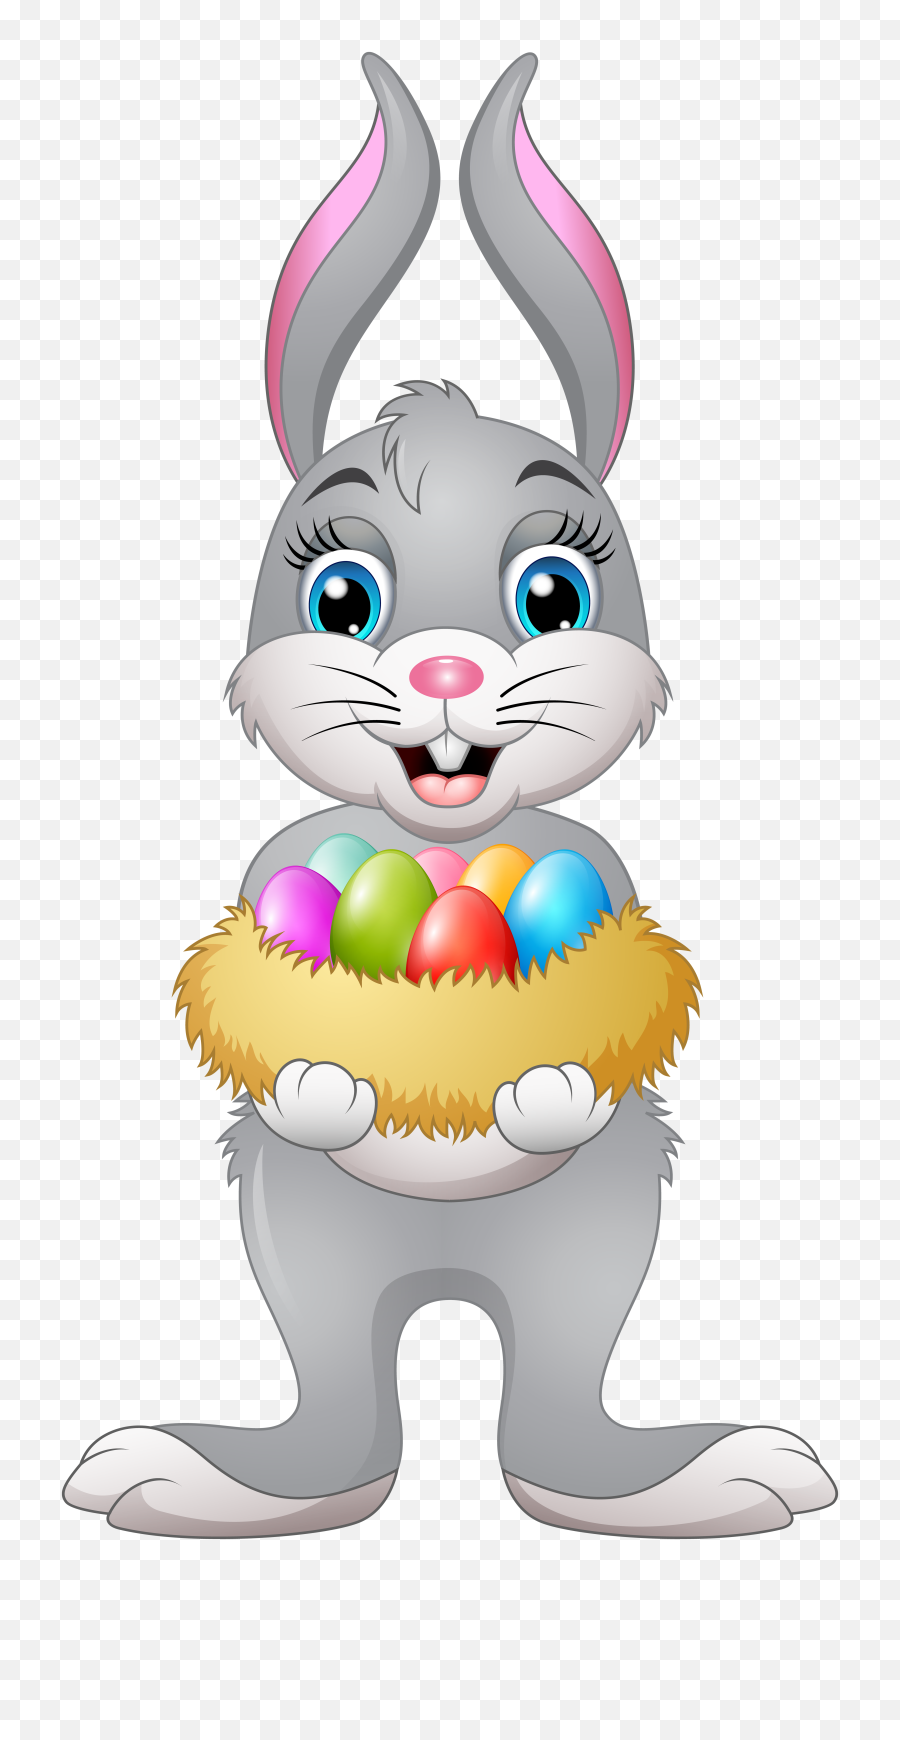 Download Easter Bunny Transparent Image - Easter Bunny Transparent Png,Bunny Transparent